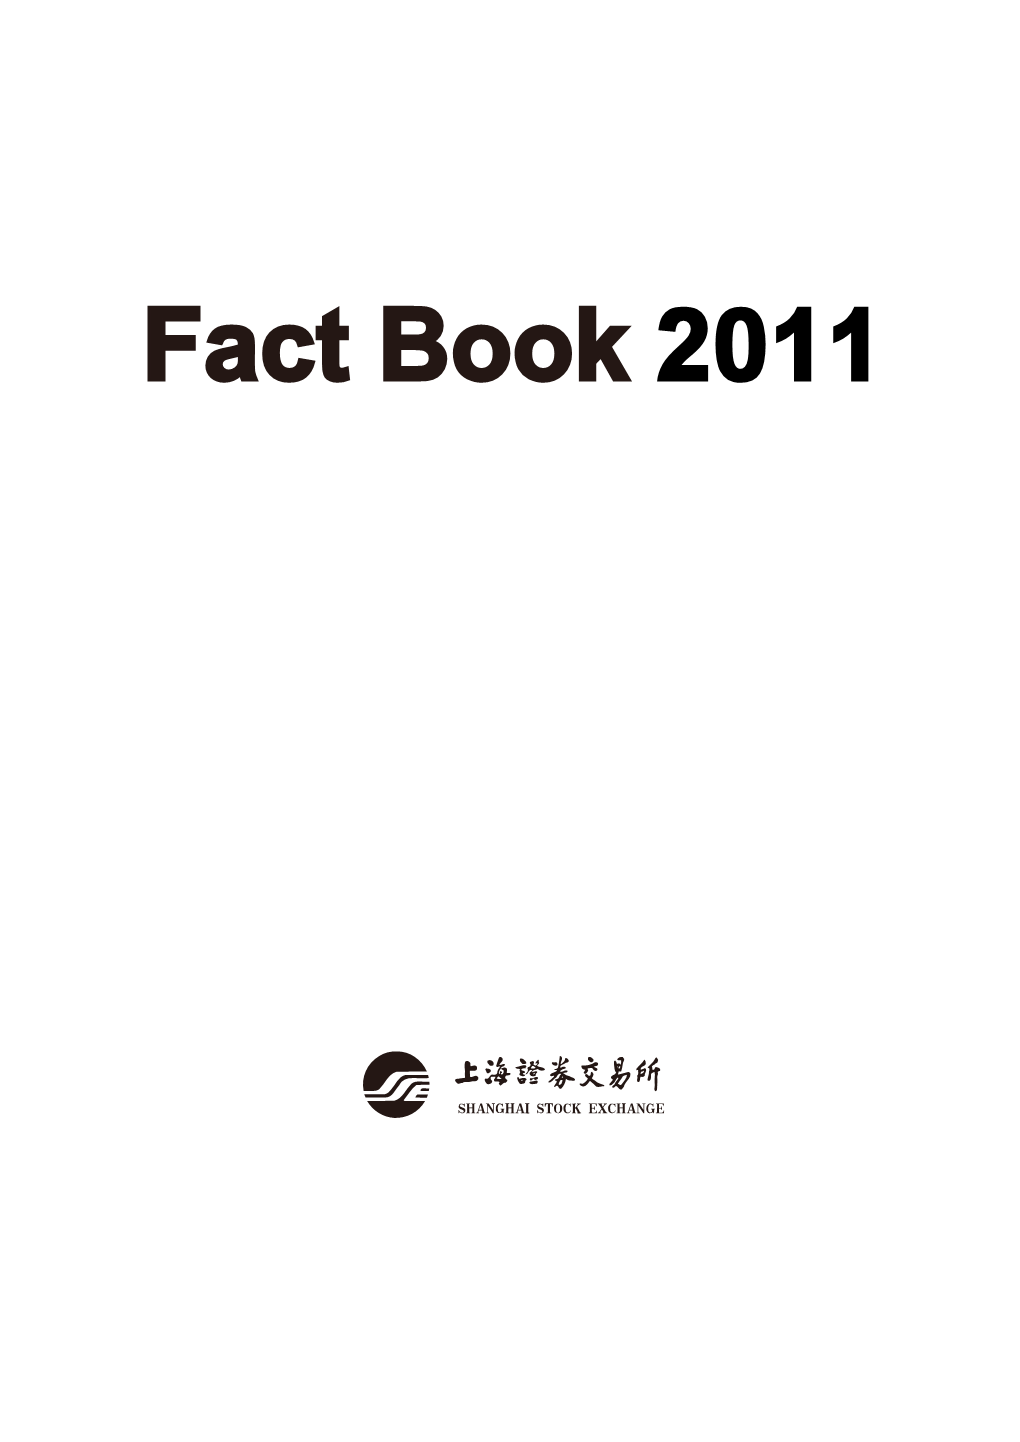 Factbook 2011